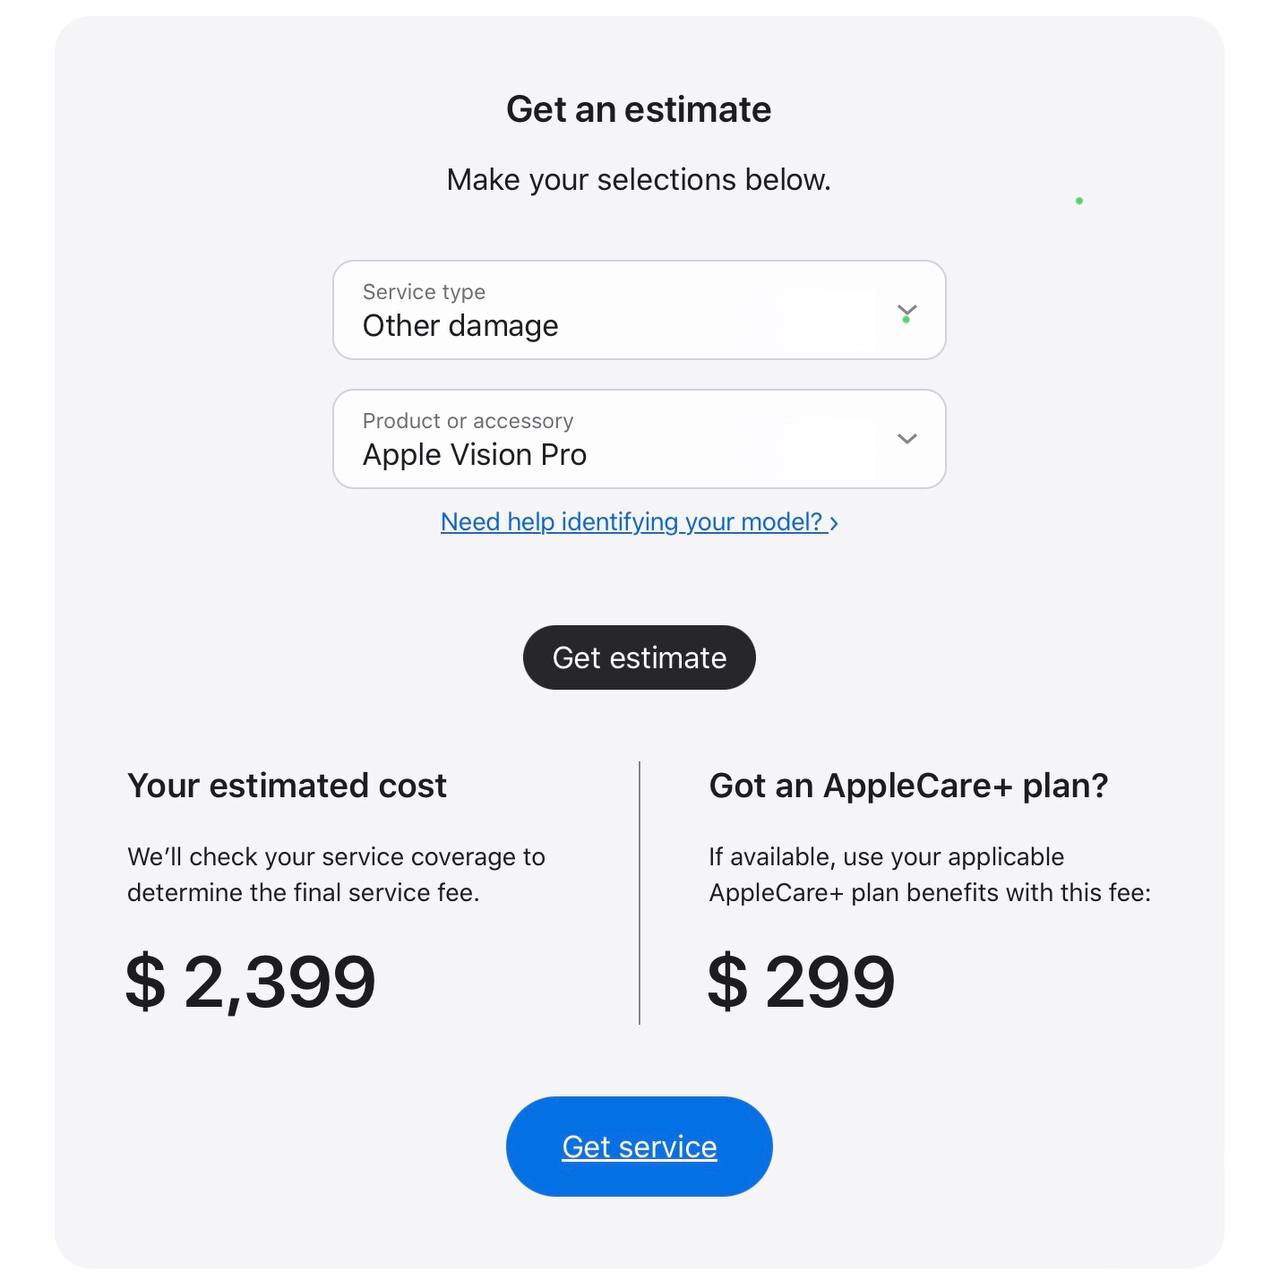 Полная замена устройства при AppleCare+ за два года обойдётся всего в $800, что намного дешевле цены без гарантии – $2399! 